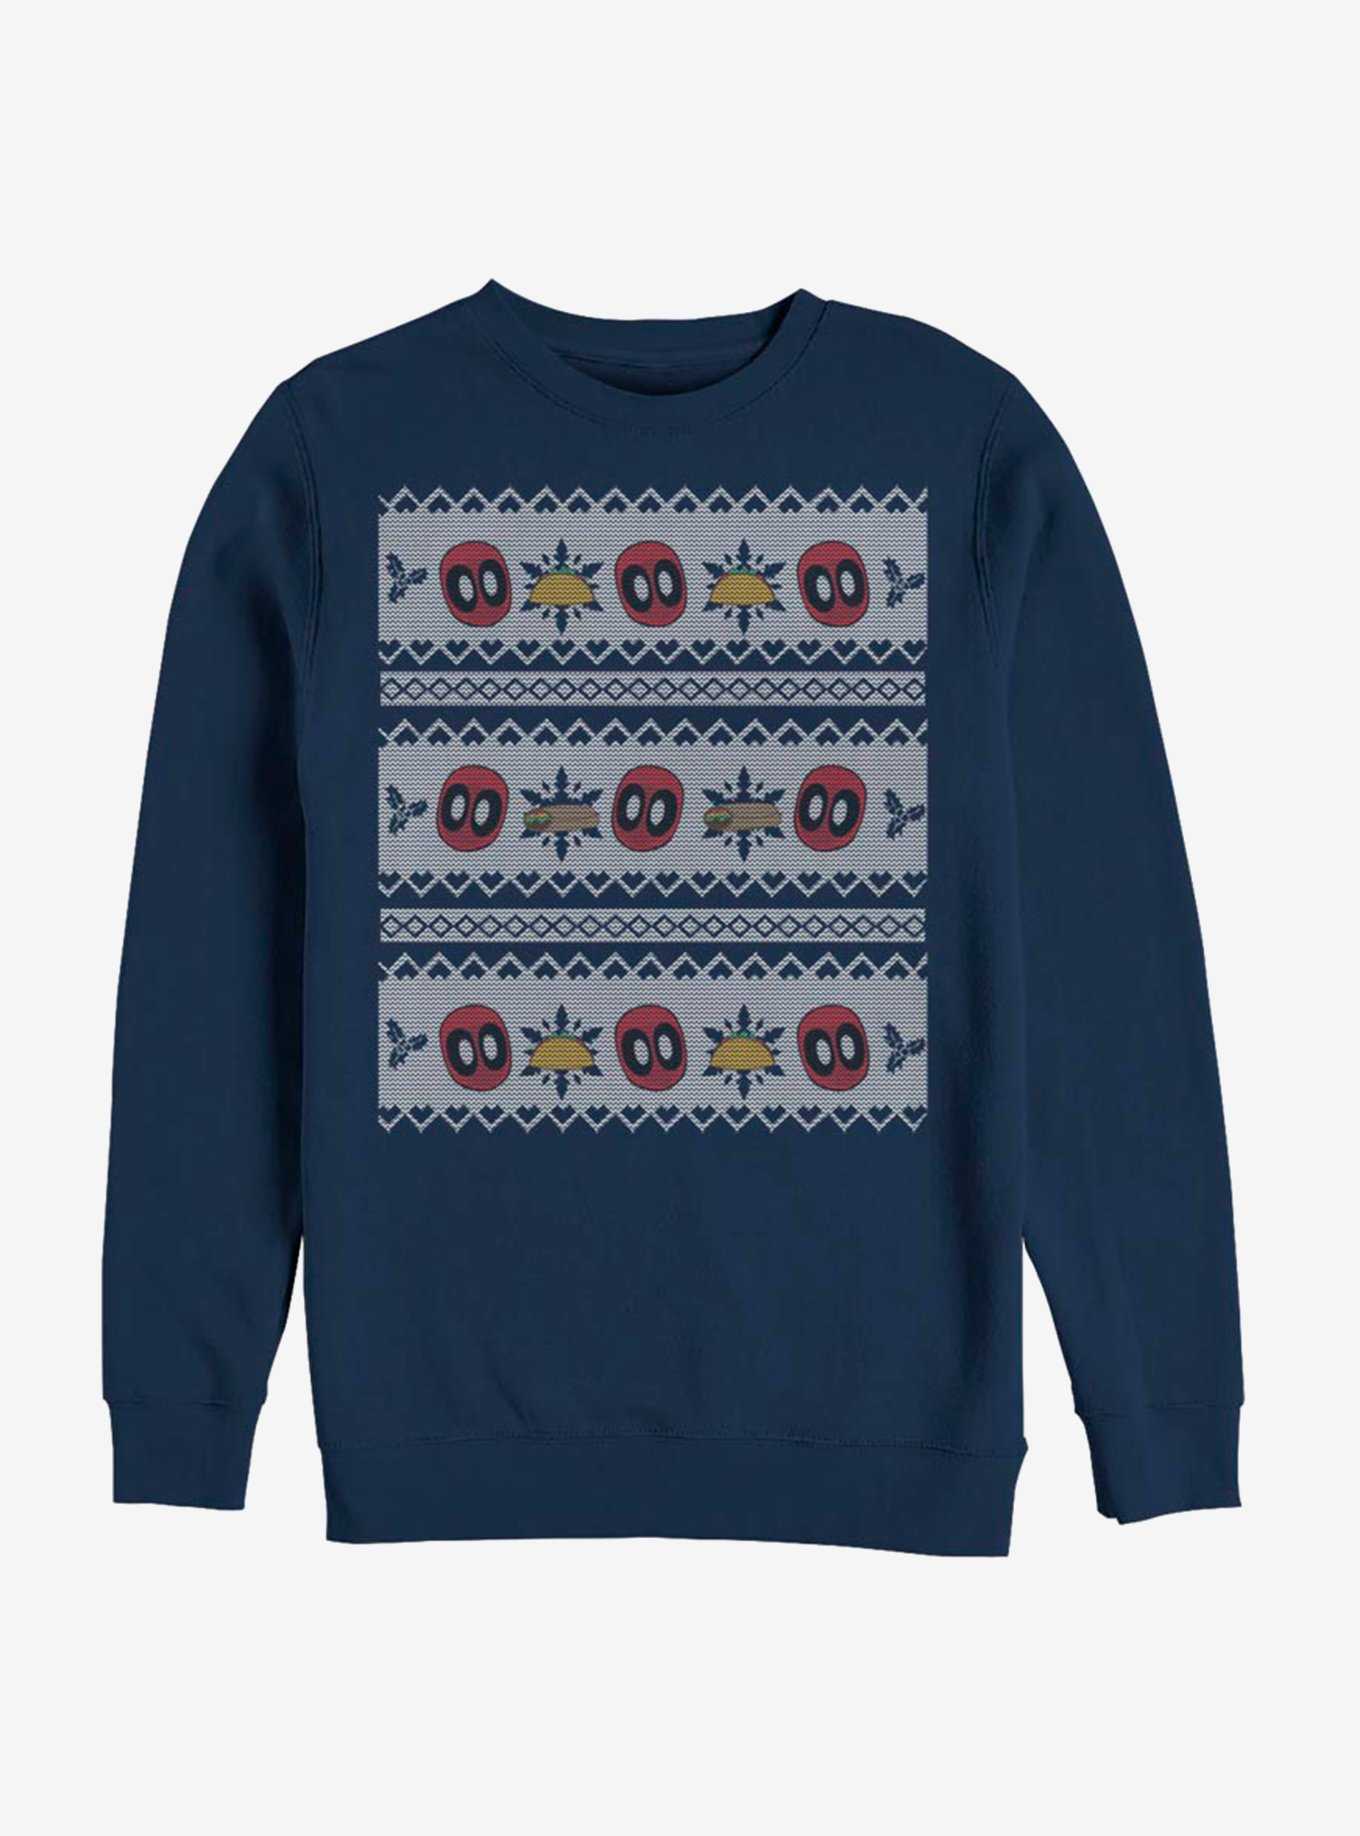 Marvel Deadpool Christmas Pattern Sweatshirt, , hi-res